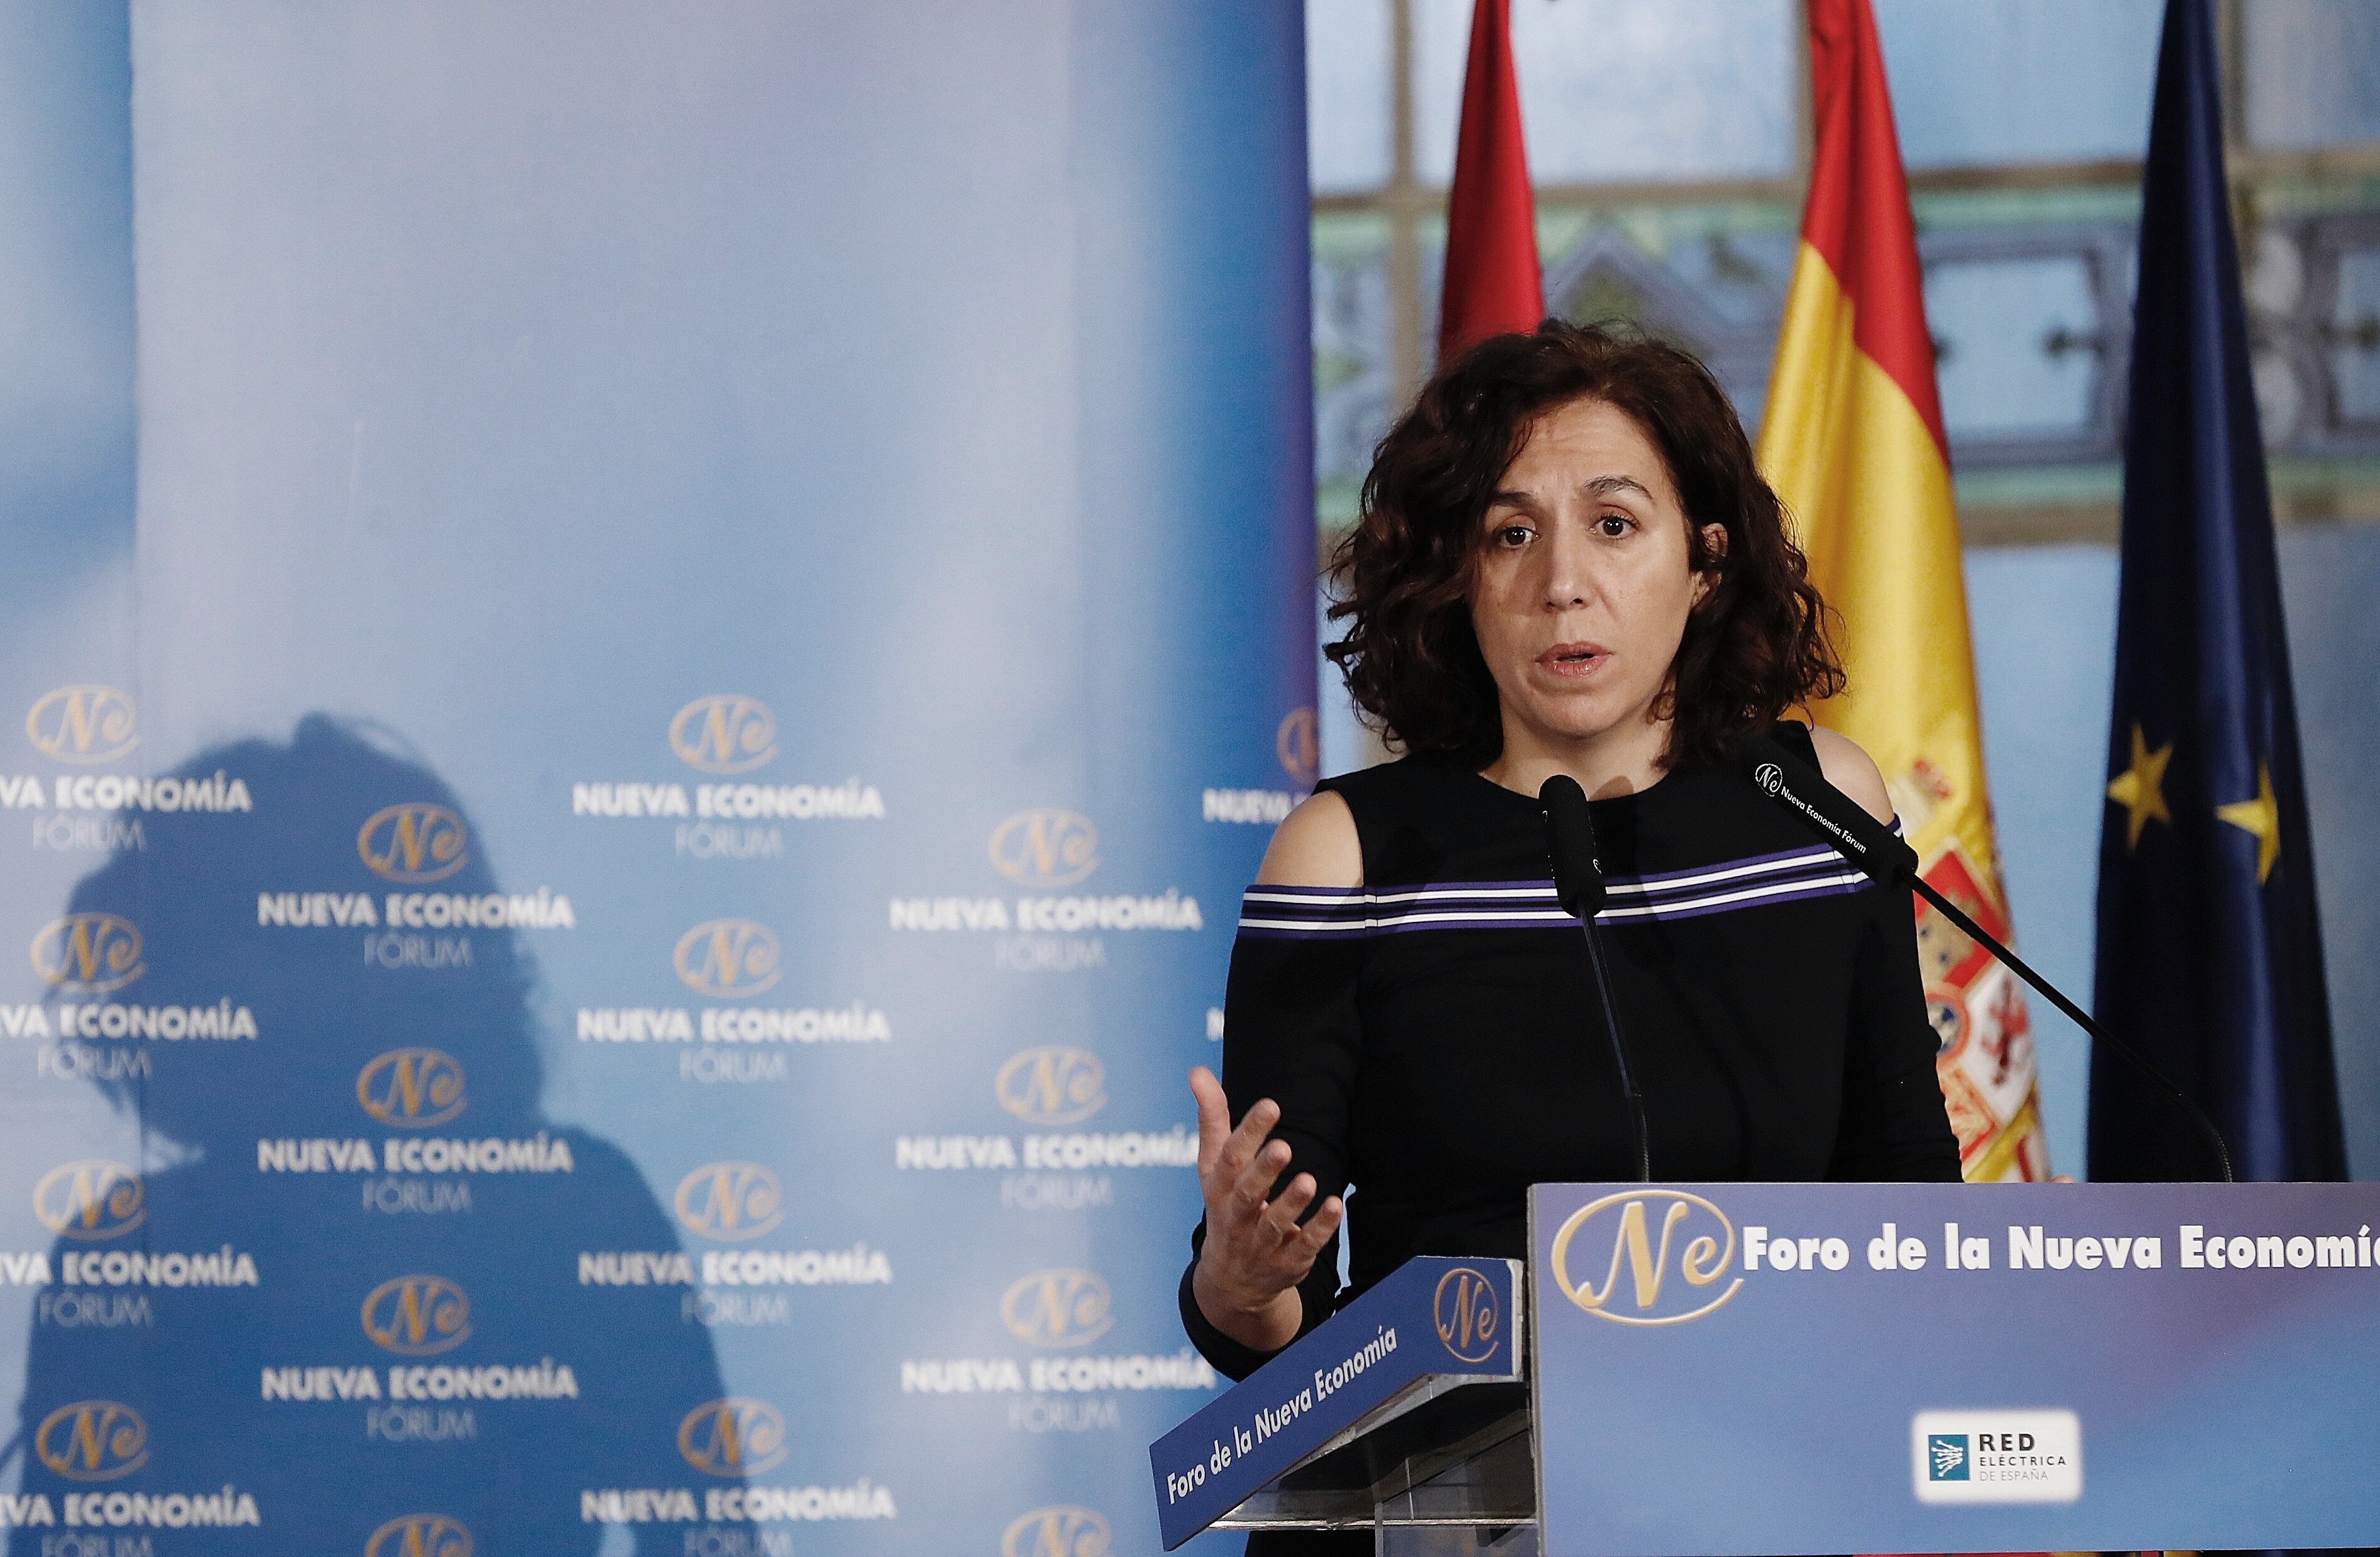 Irene Lozano: "Duc al canell la bandera d'Espanya i no em fa al·lèrgia"